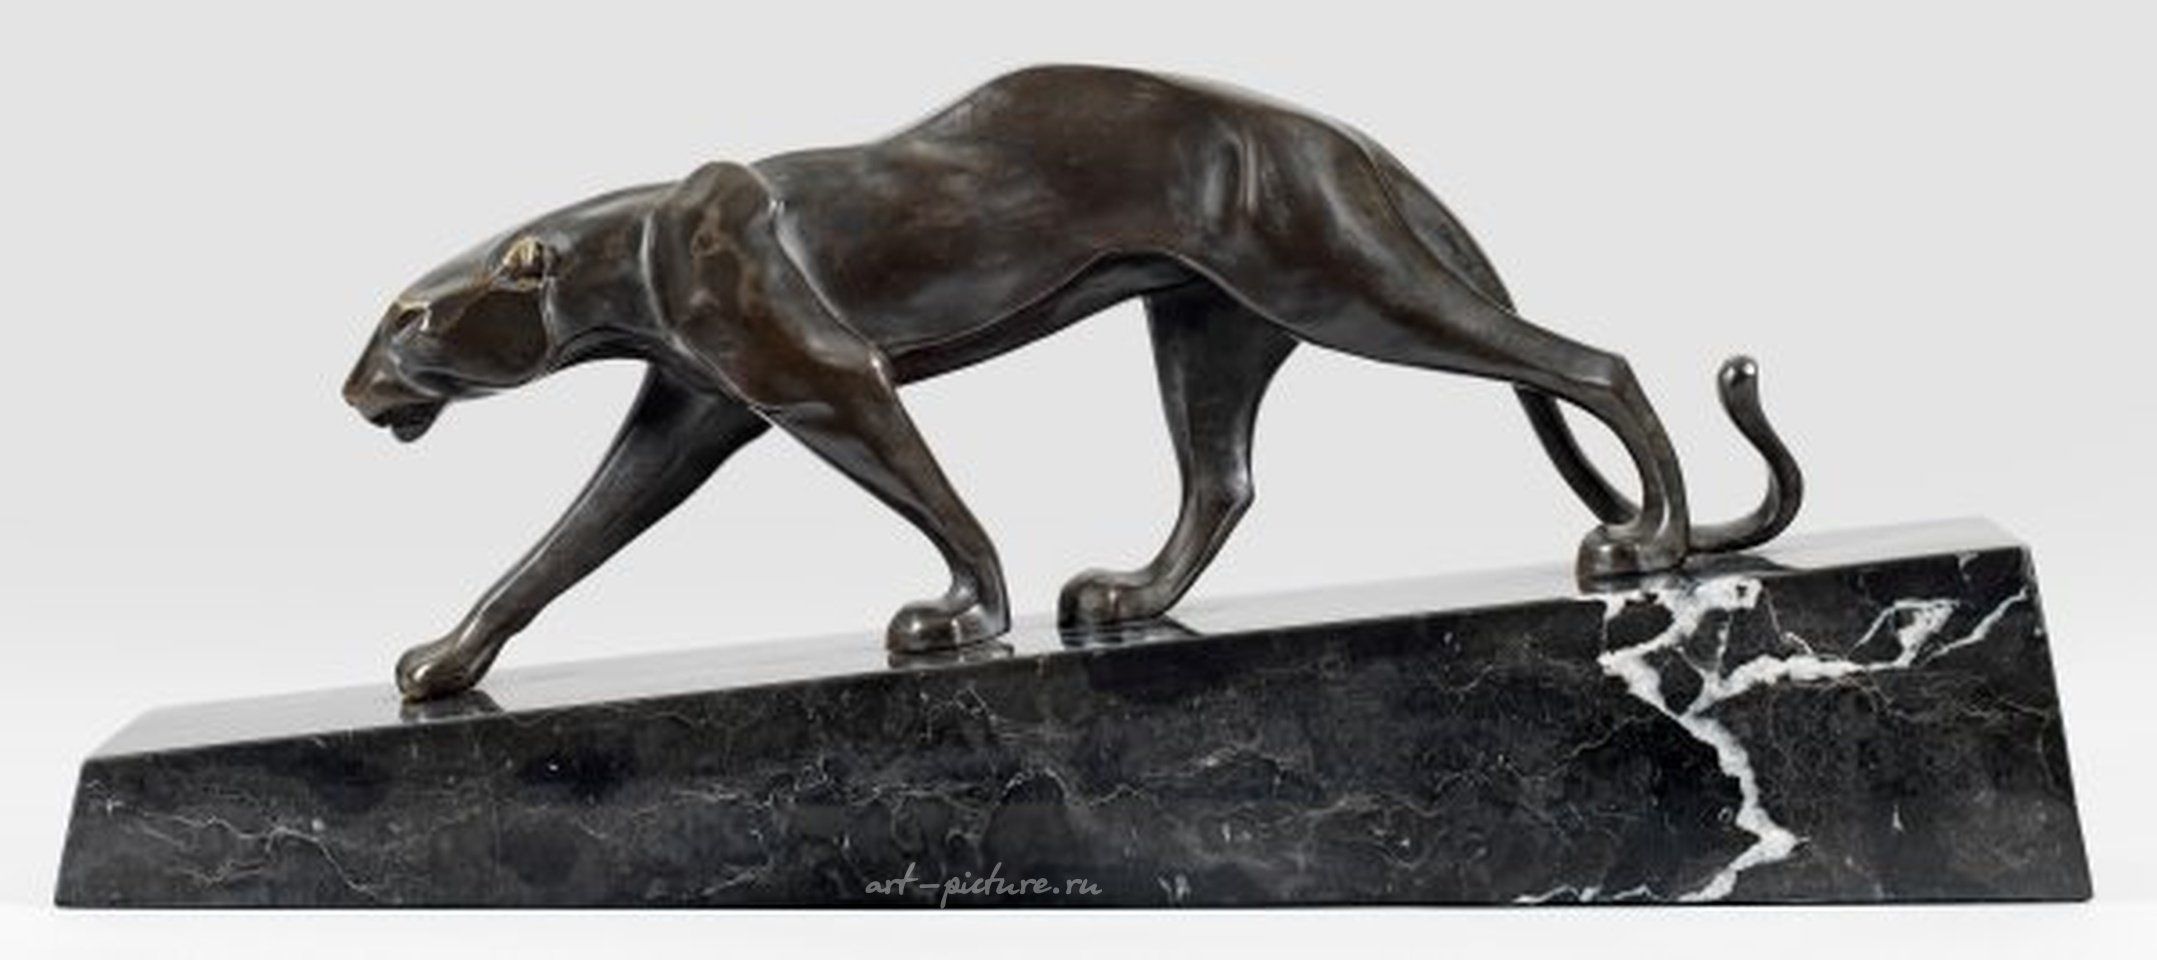 Contemporary animal sculptors